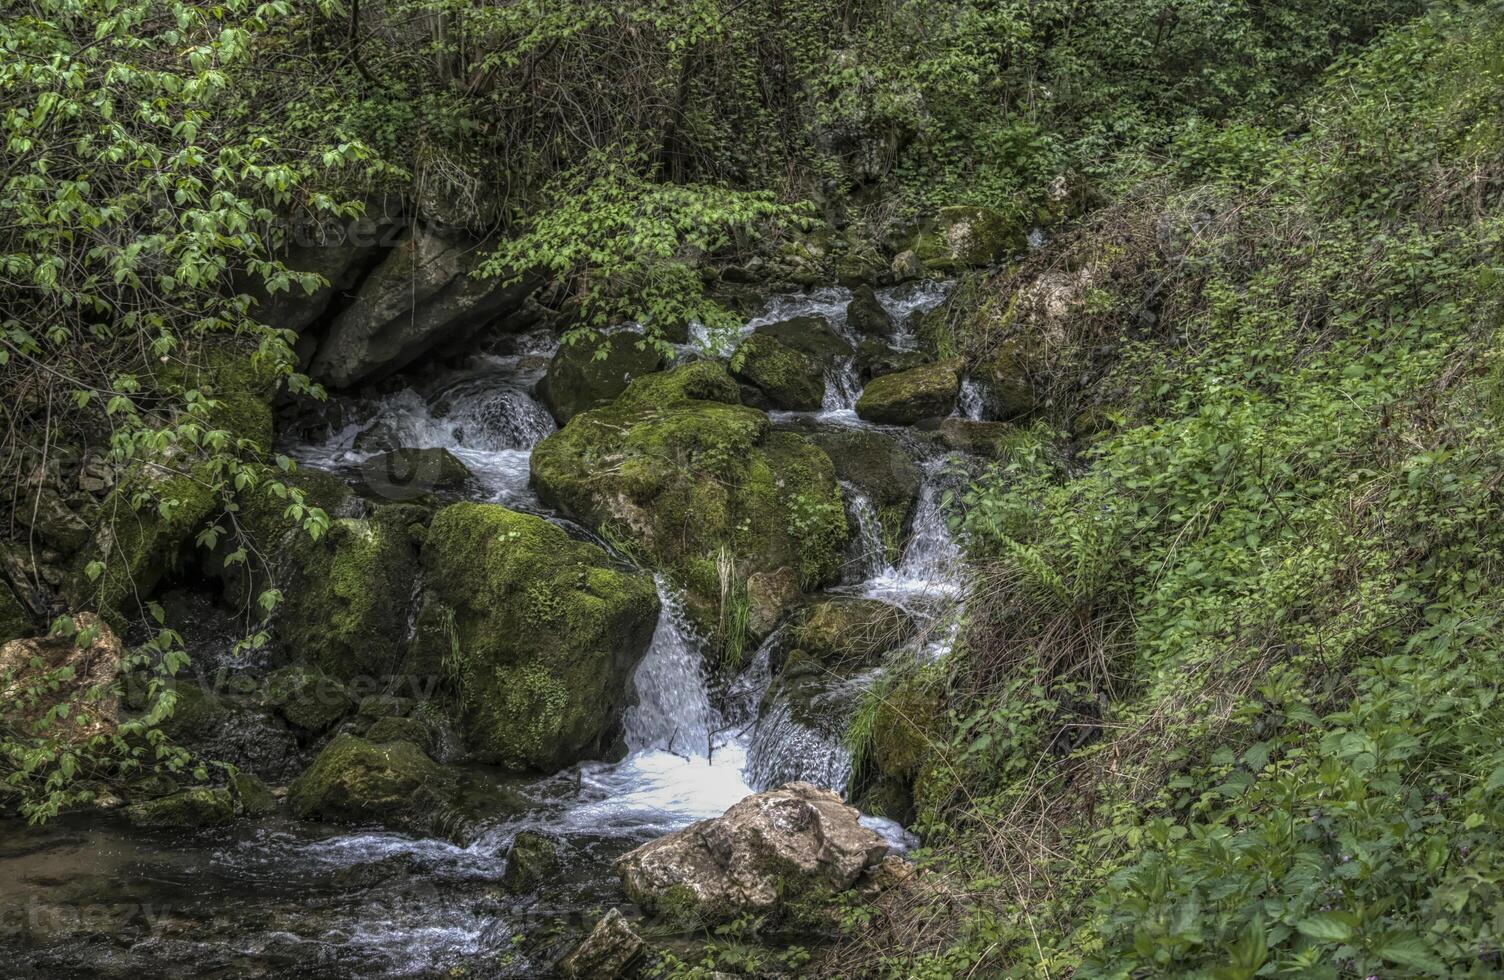 een klein waterval in de buurt de dorp van potpece in Servië foto